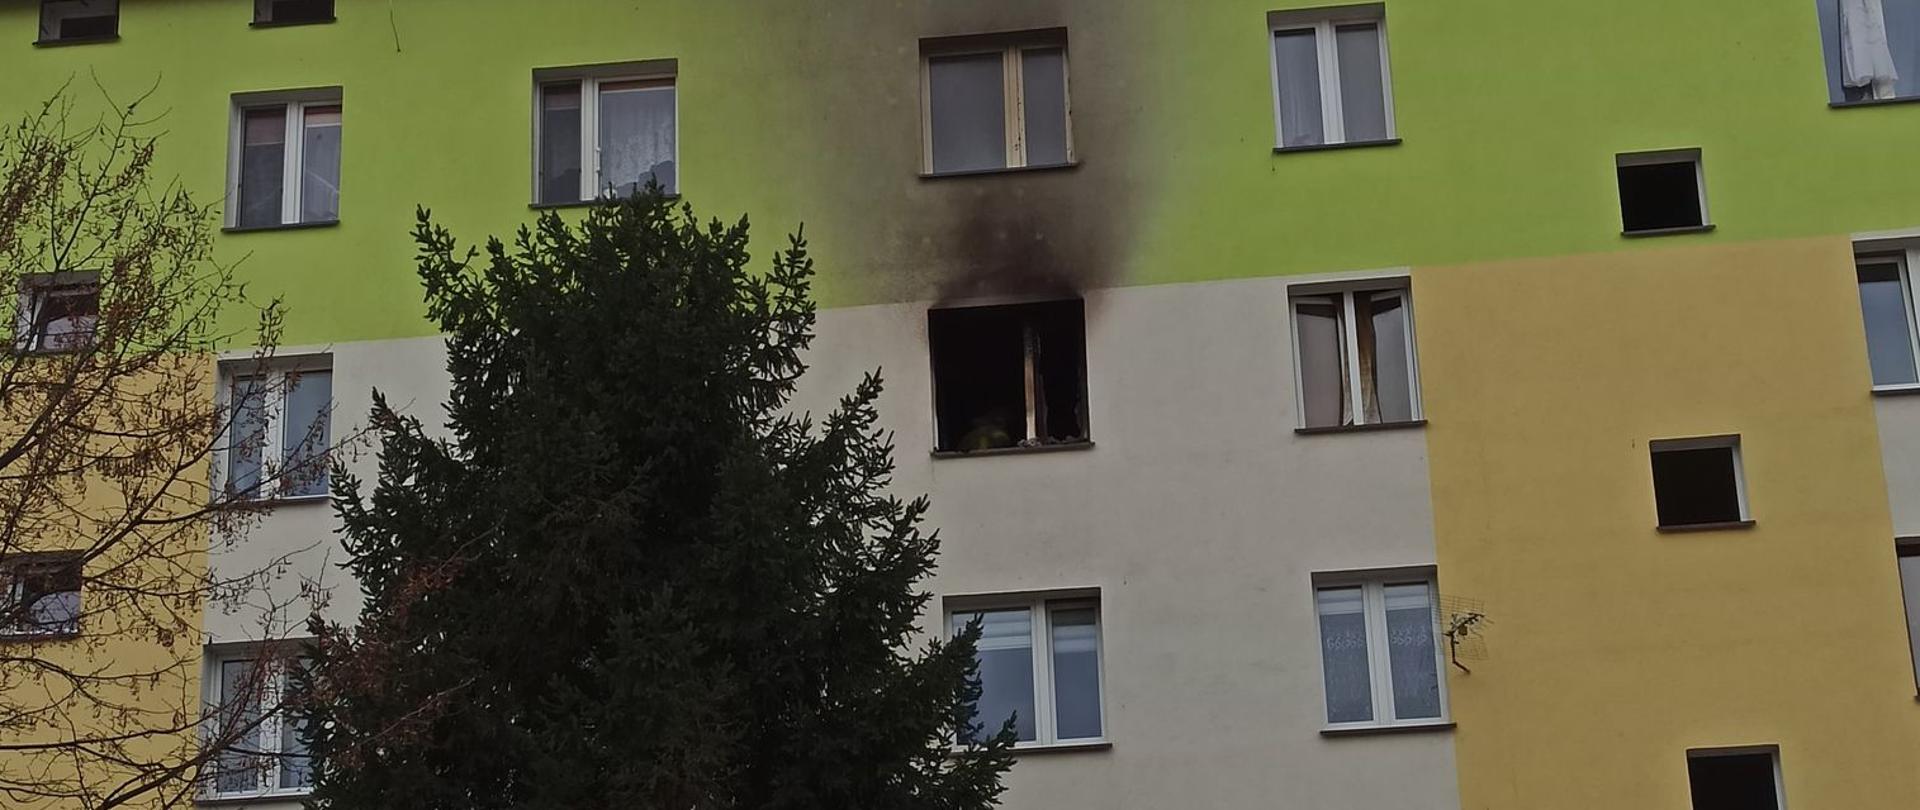 Pożar mieszkania w budynku wielorodzinnym w Sierpcu 